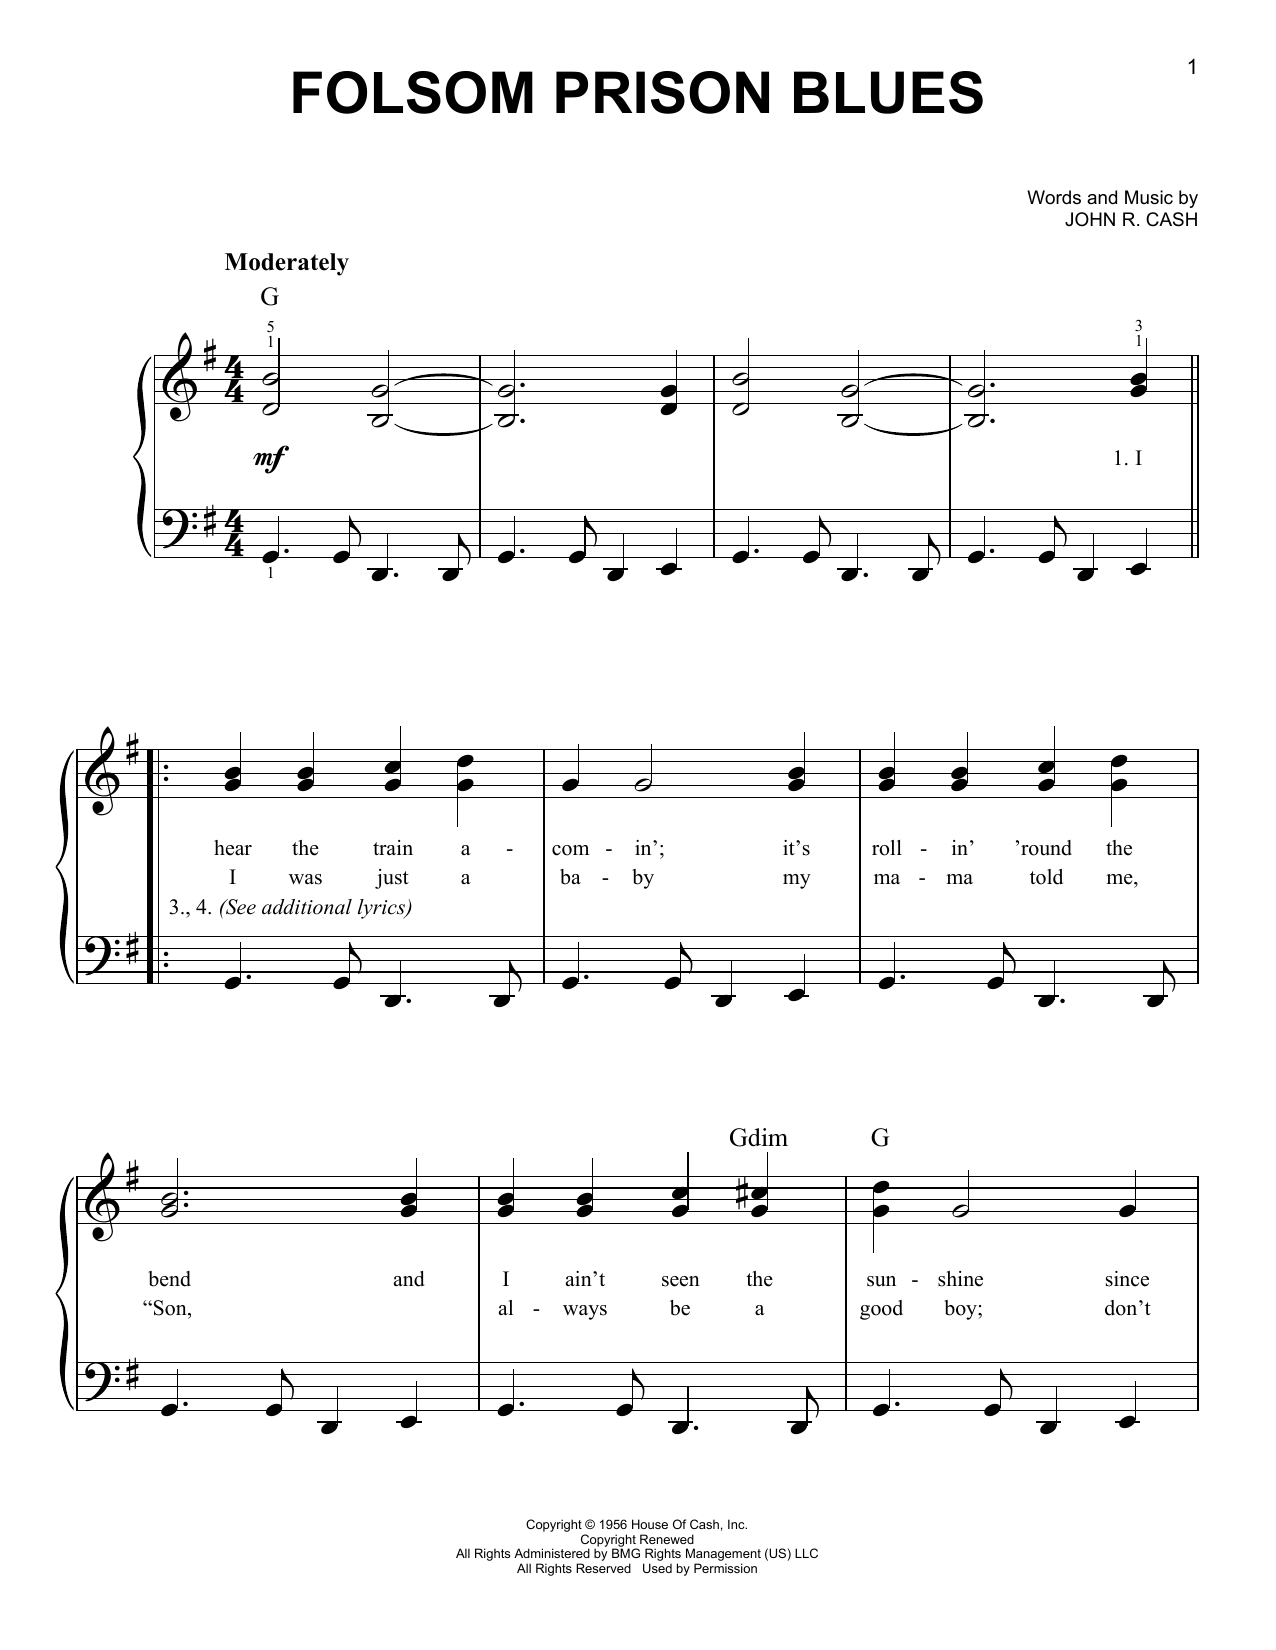 Johnny Cash Folsom Prison Blues Sheet Music Notes & Chords for Ukulele - Download or Print PDF